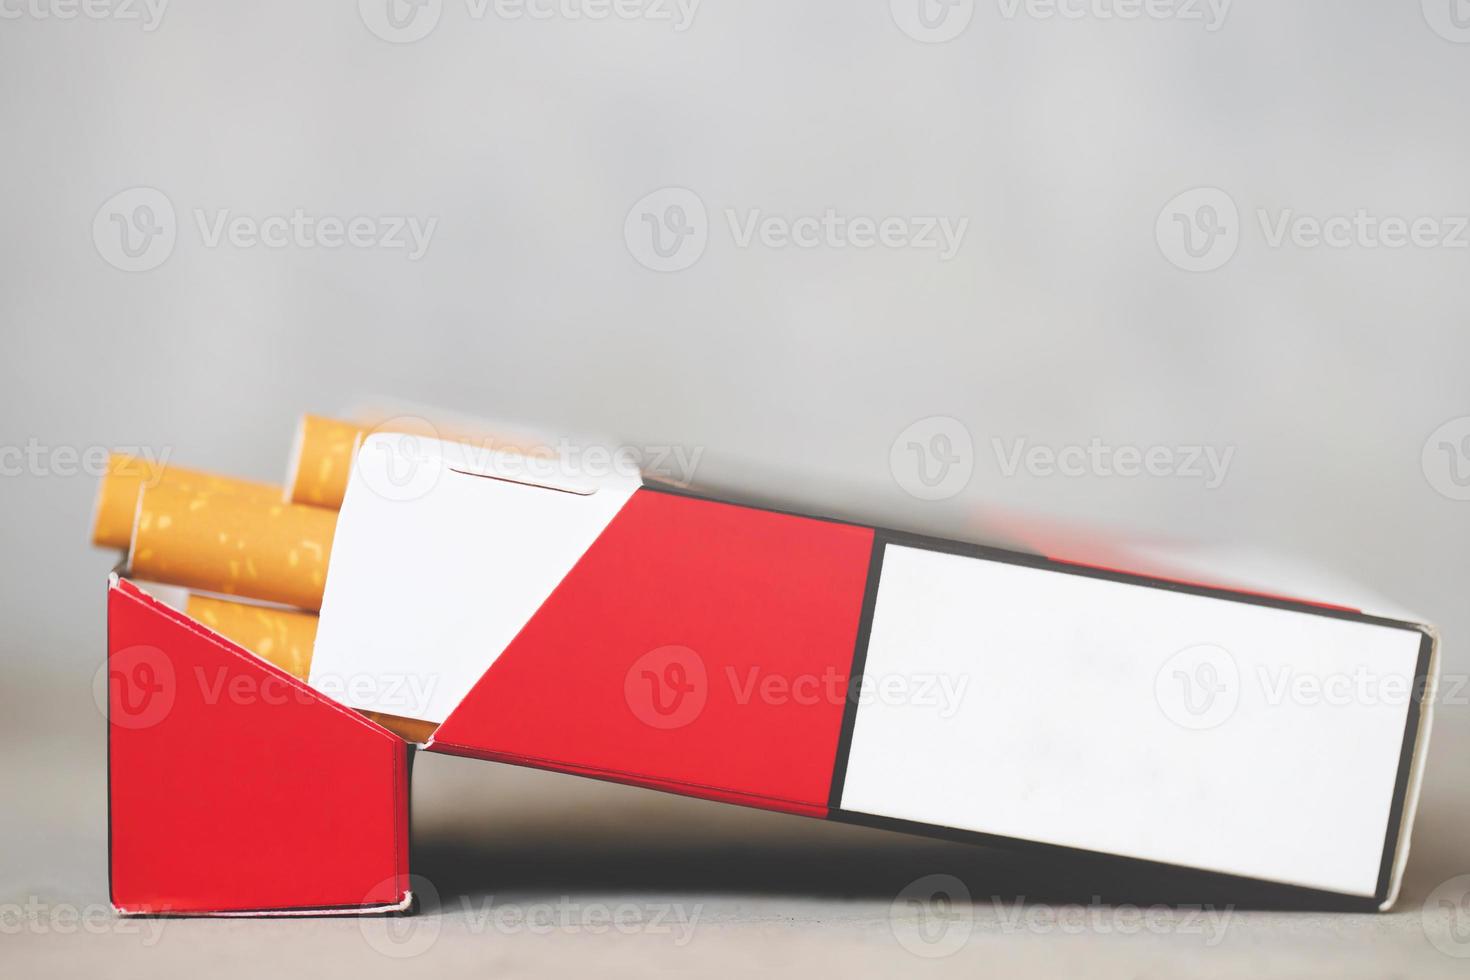 décollez-le du paquet de cigarettes préparez-le à fumer sur un fond en bois blanc. ligne d'emballage. la photo filtre la lumière naturelle.